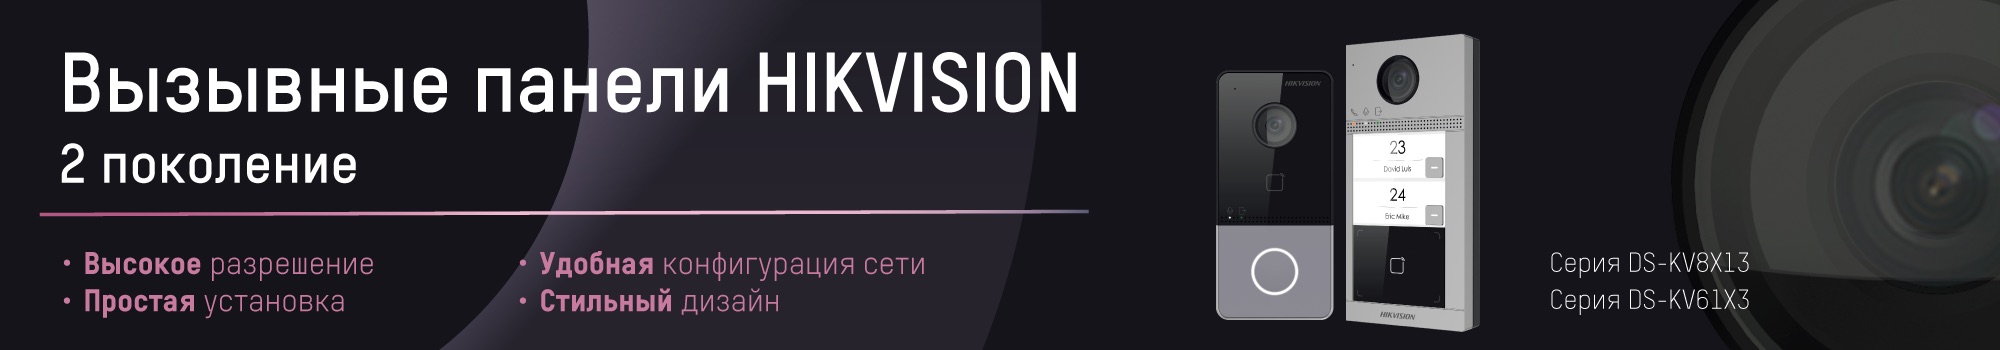 Новые вызывные панели Hikvision в линейке домофонии 2-го поколения